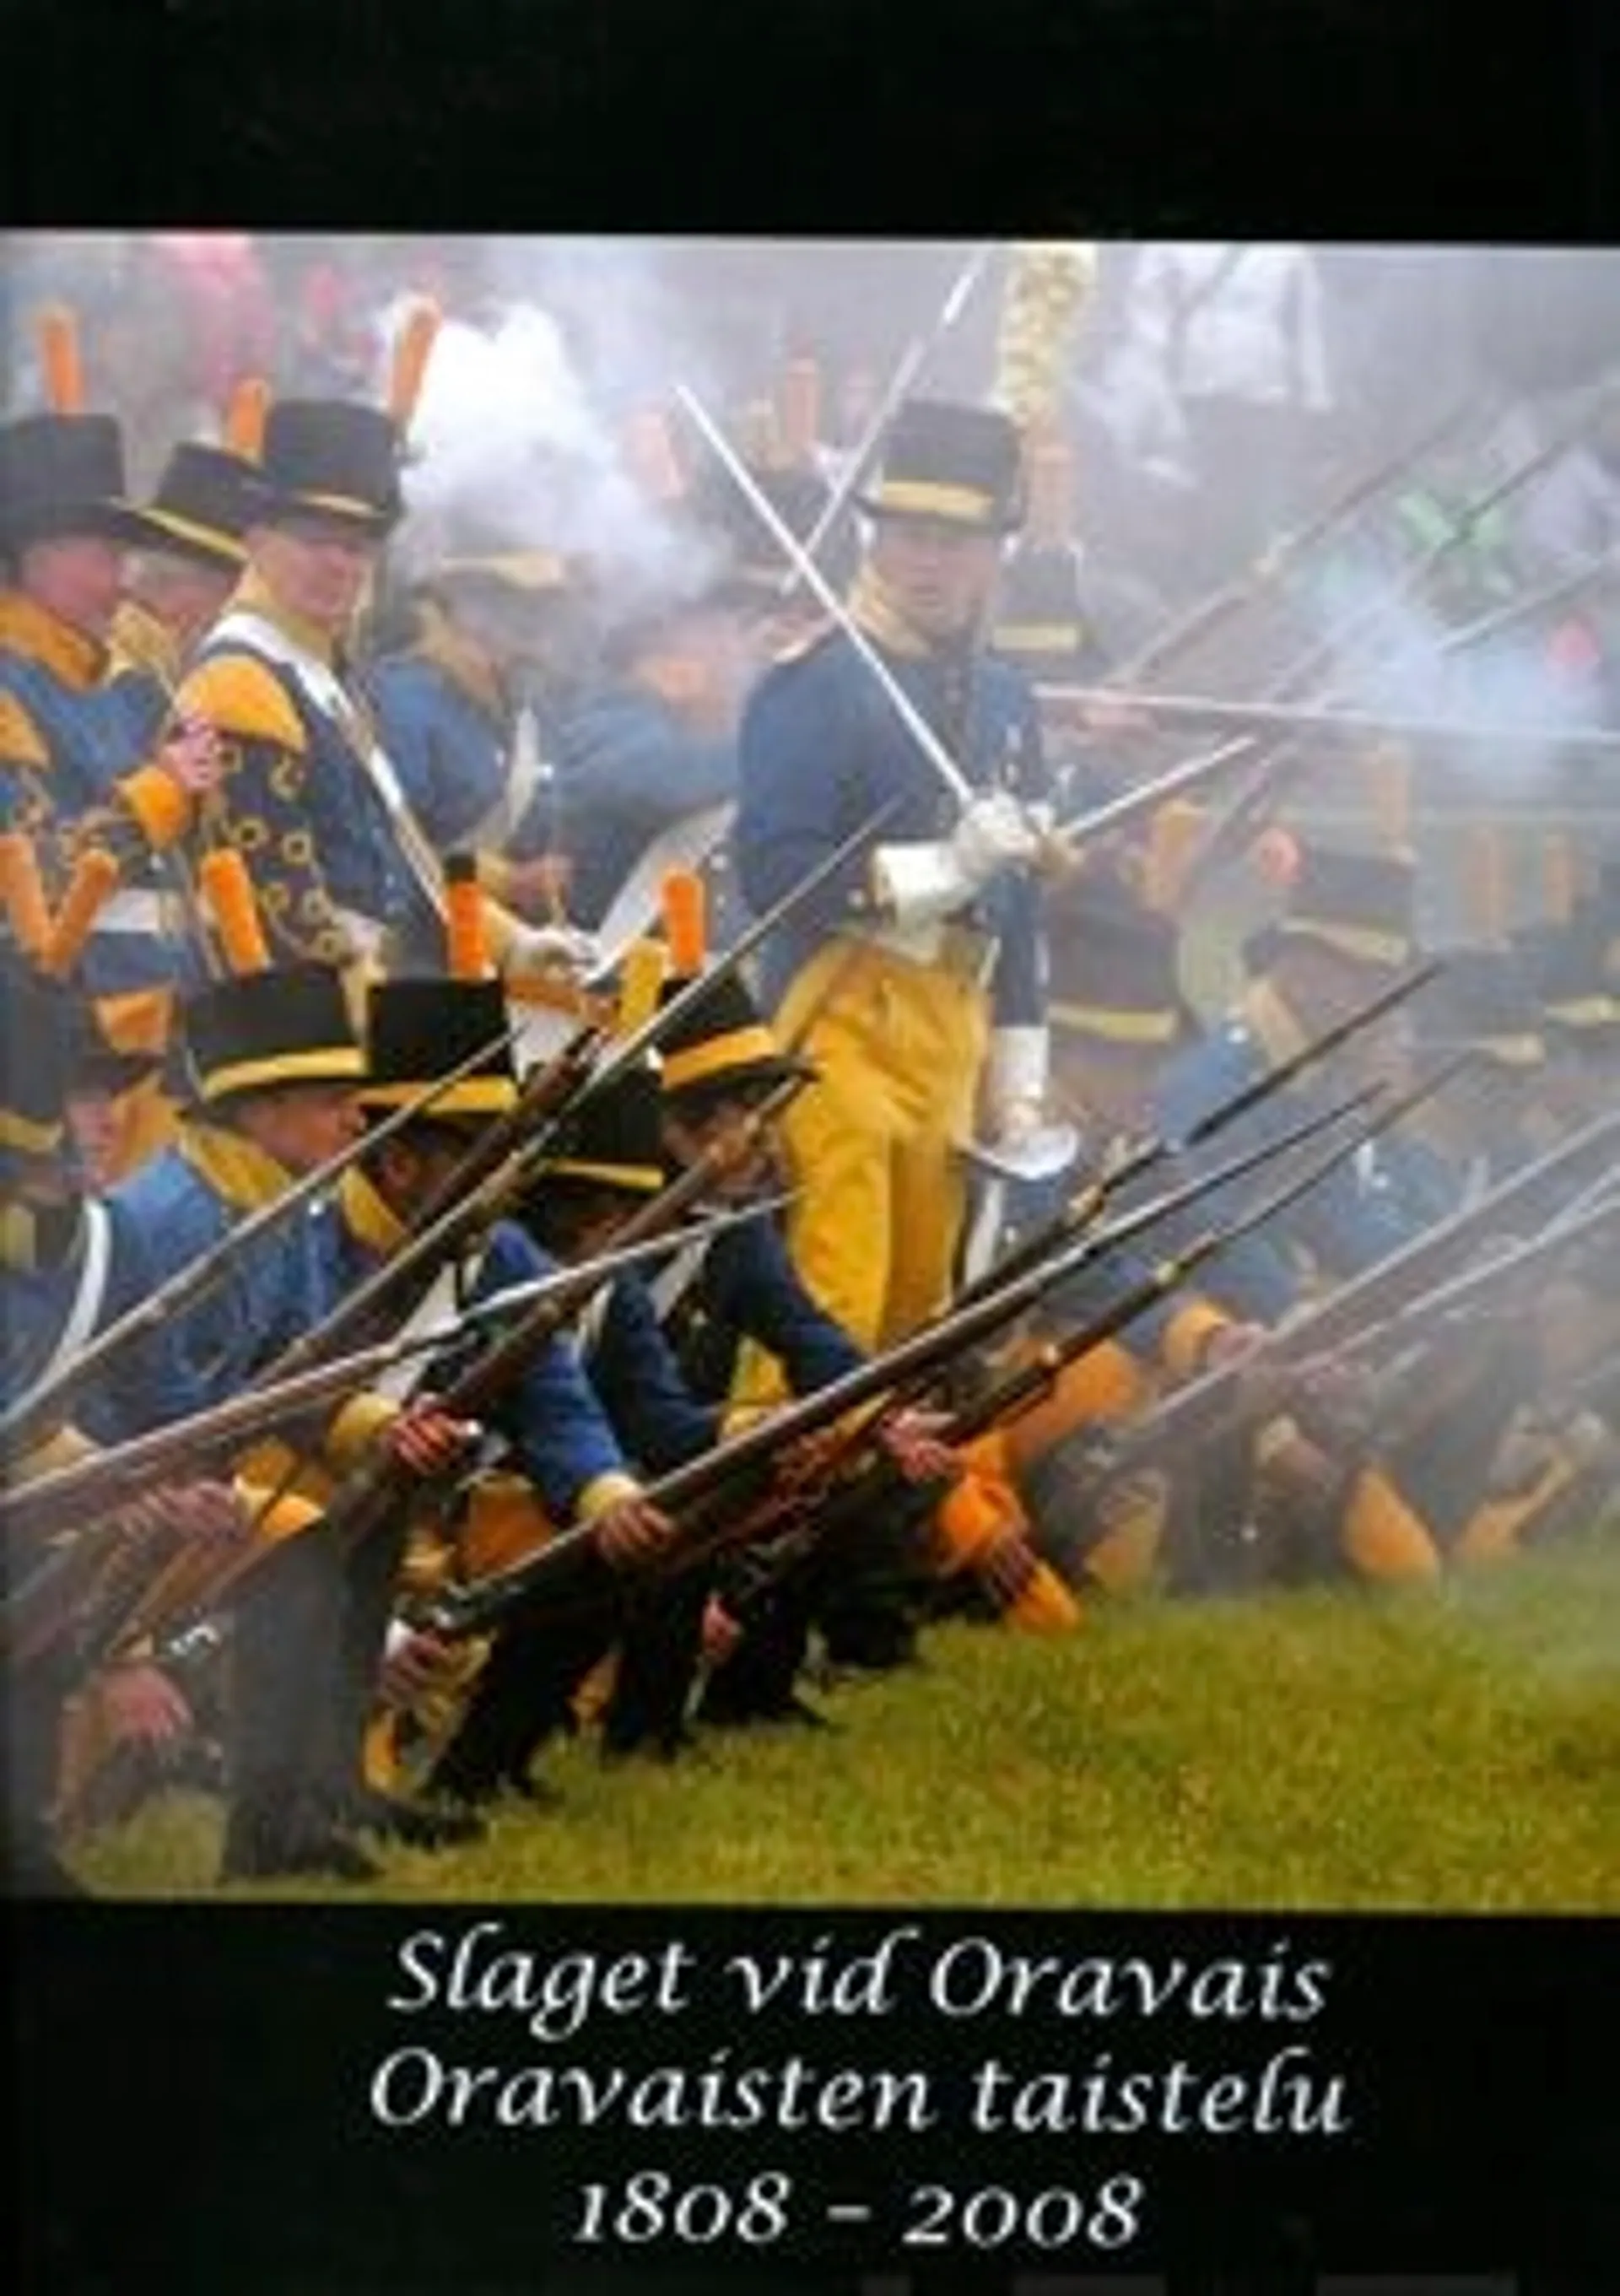 Backman, Slaget vid Oravais 1808-2008